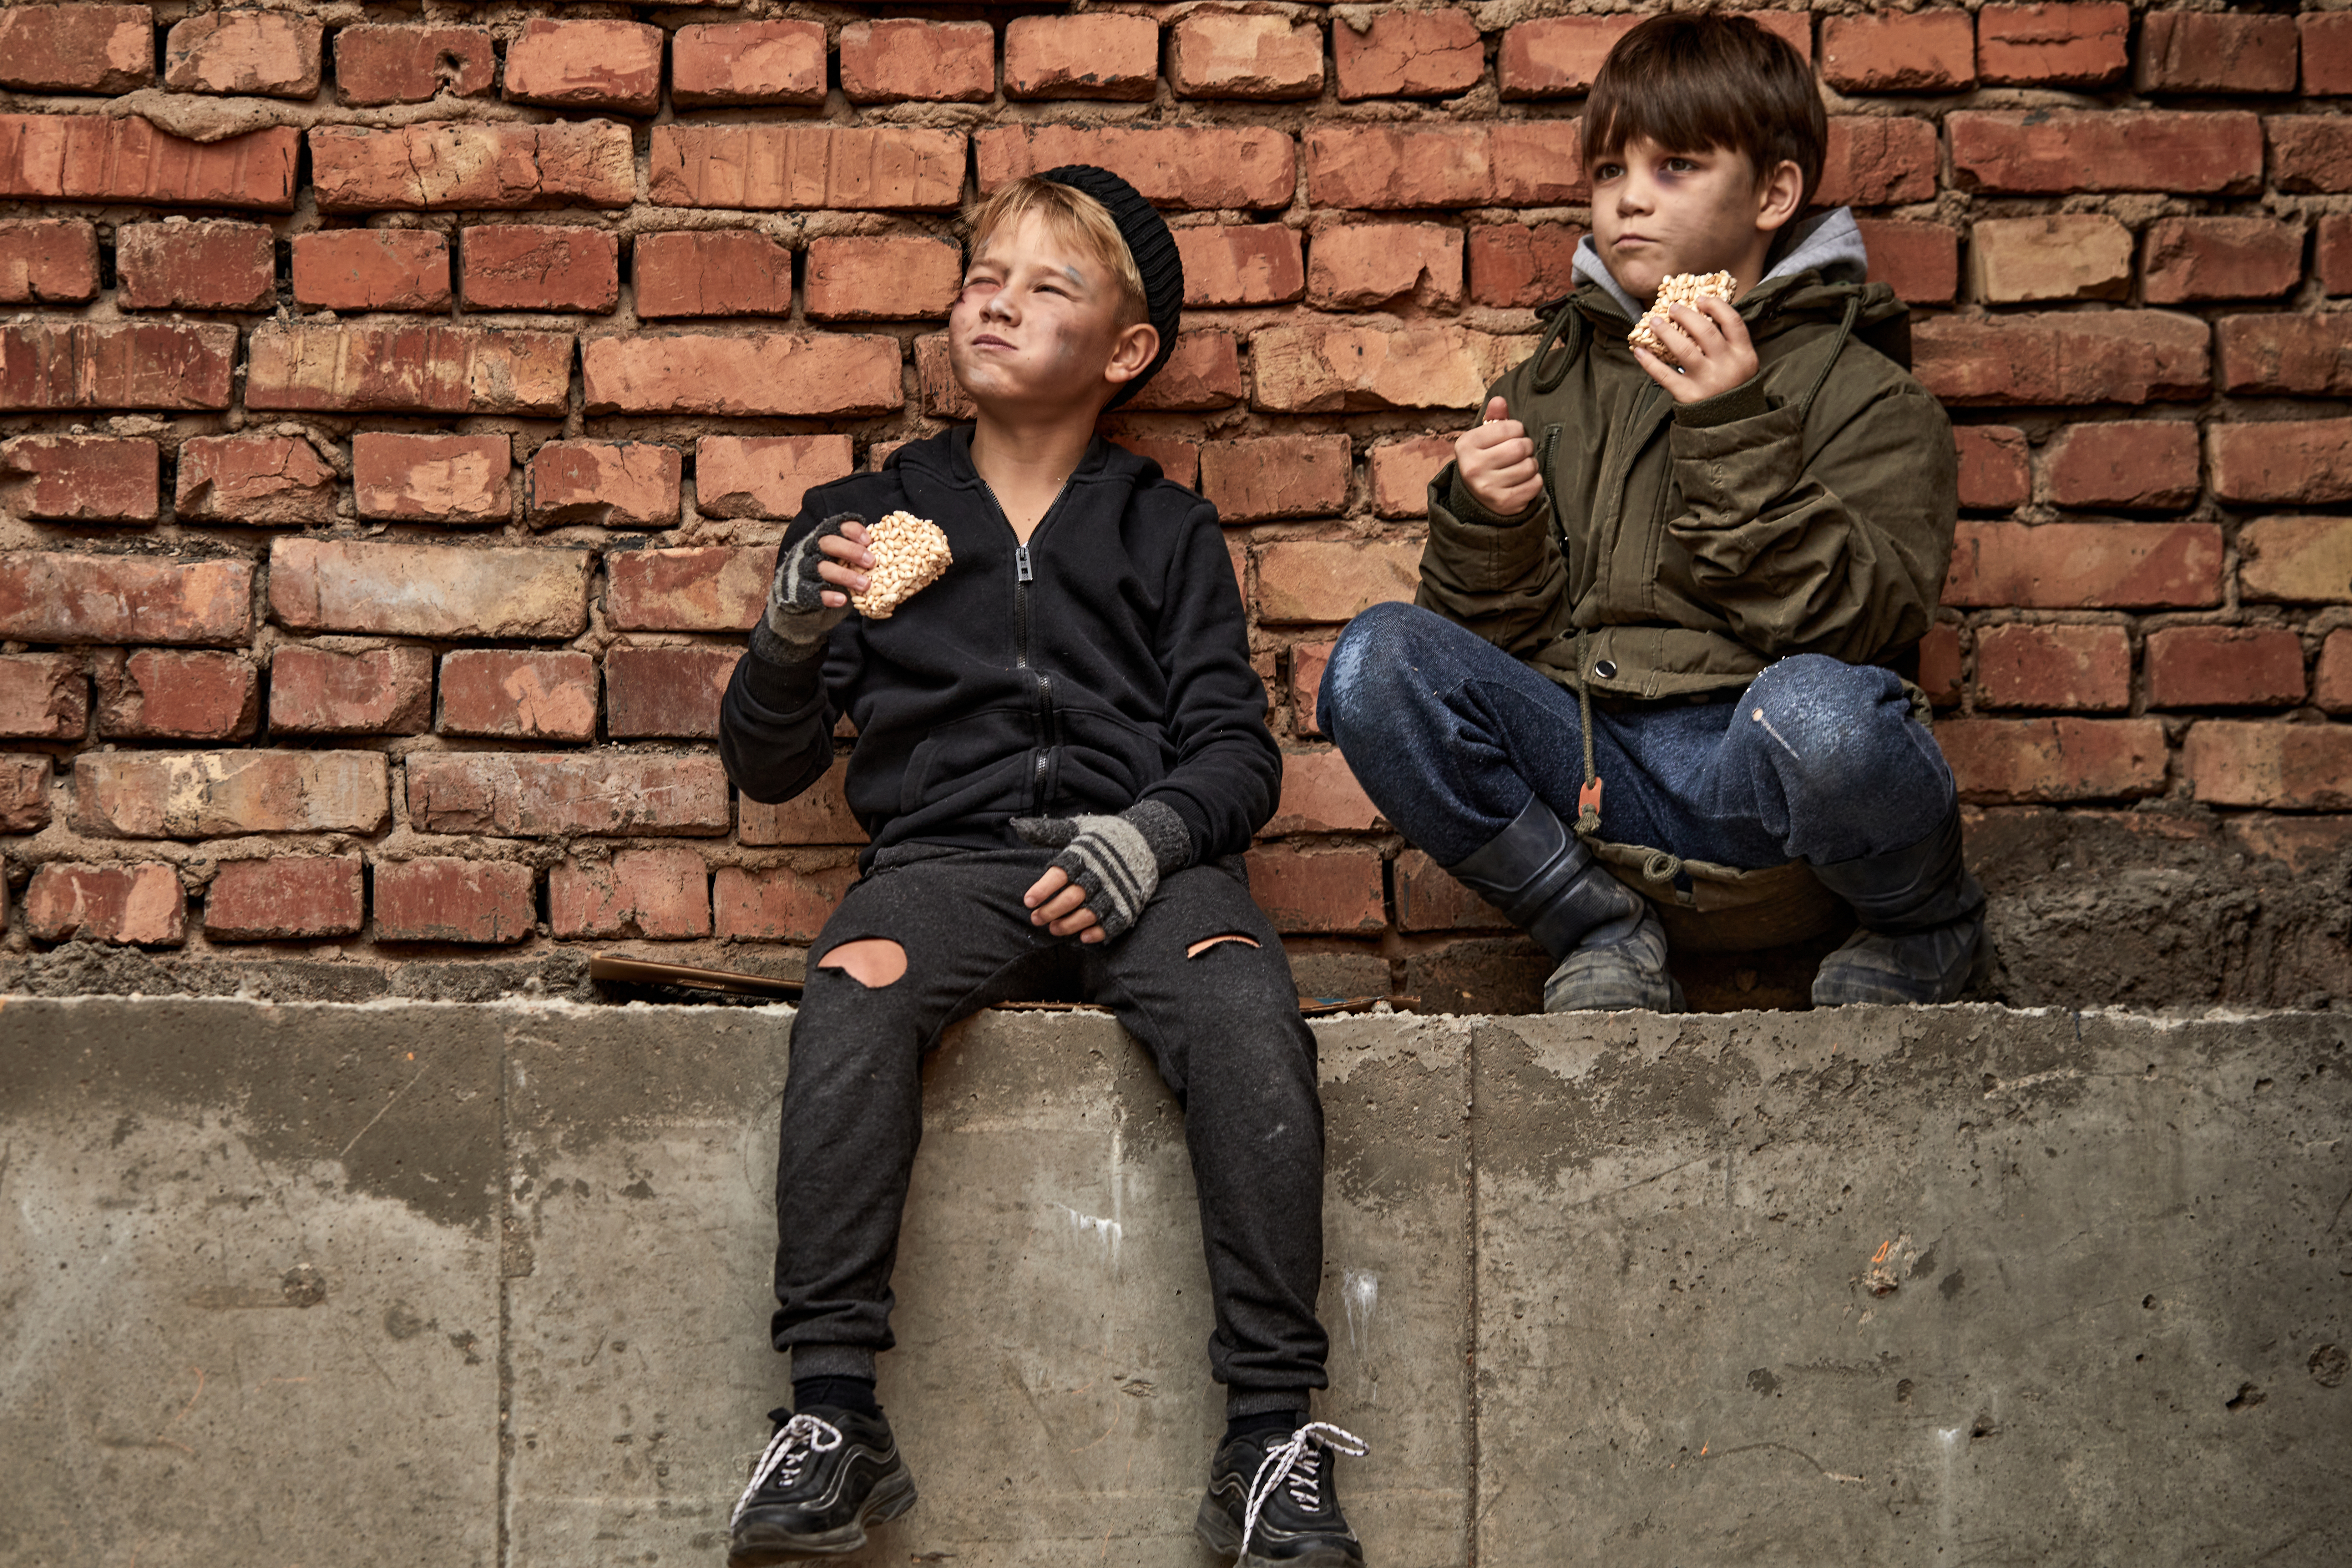 Niños pobres de la calle disfrutan de una comida | Fuente: Shutterstock.com